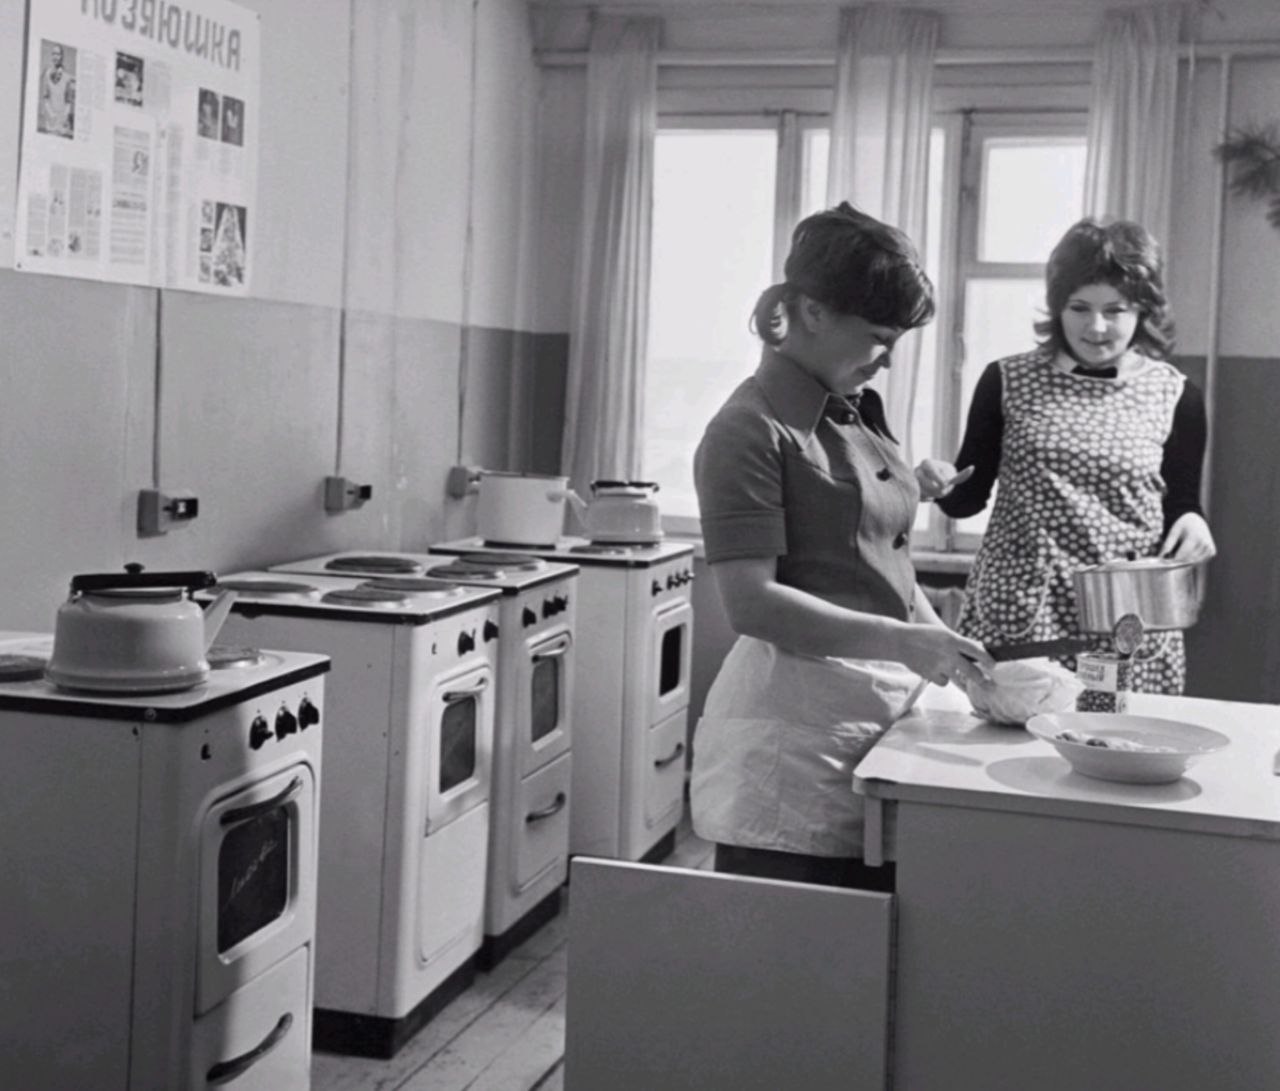 70 года как жили. Советское общежитие СССР. Советская кухня. Советская женщина на кухне. Советское студенческое общежитие.